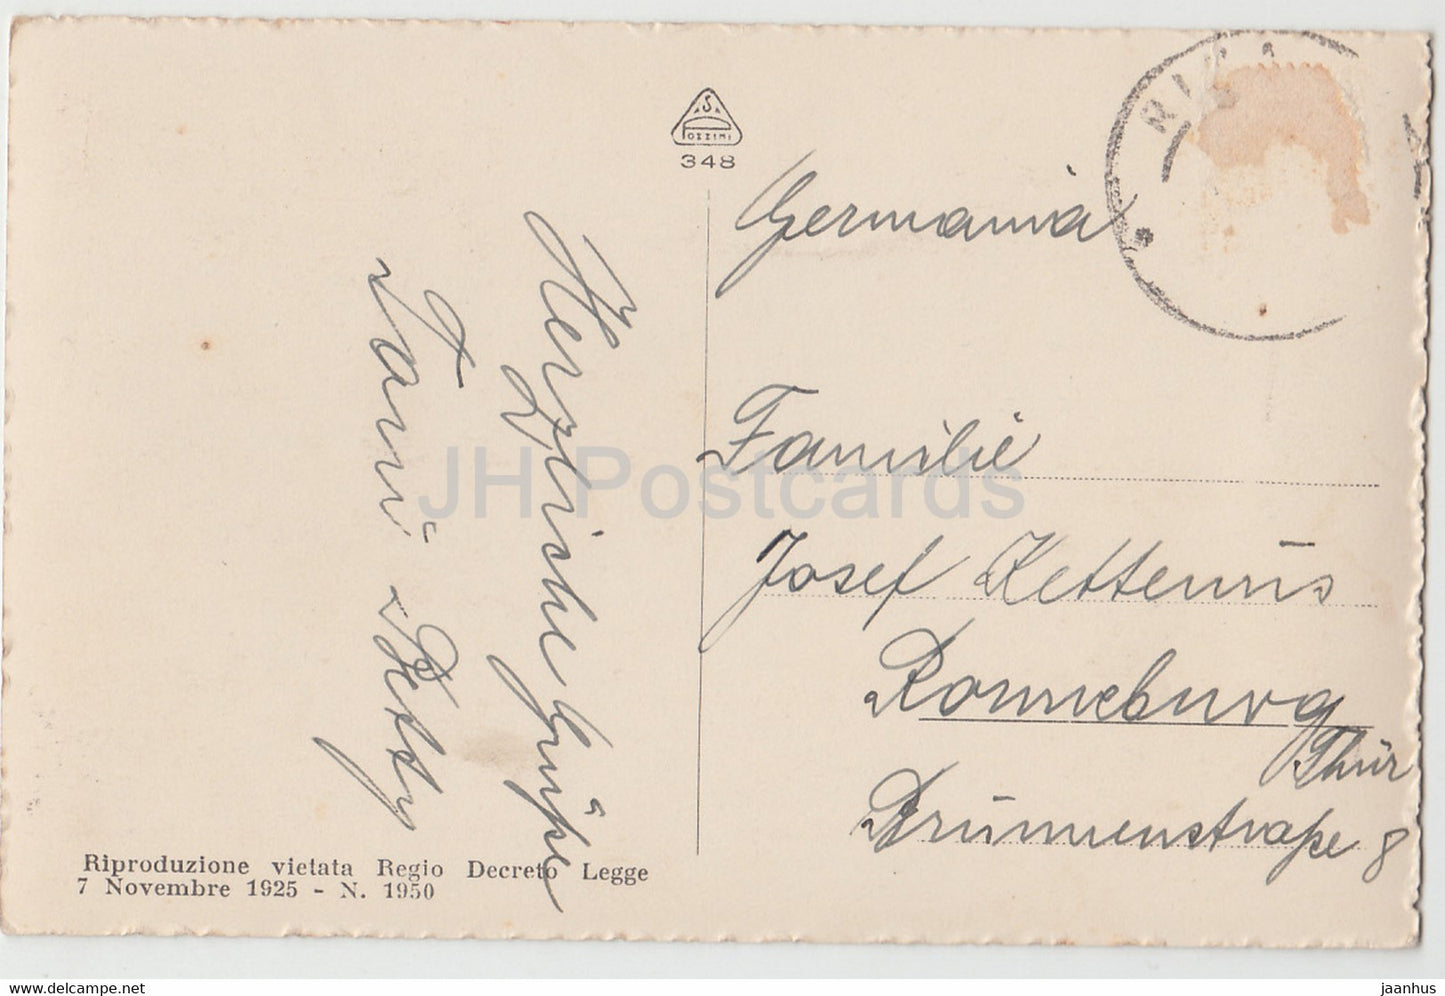 Riva - Lago di Garda - old postcard - 1925 - Italy - used